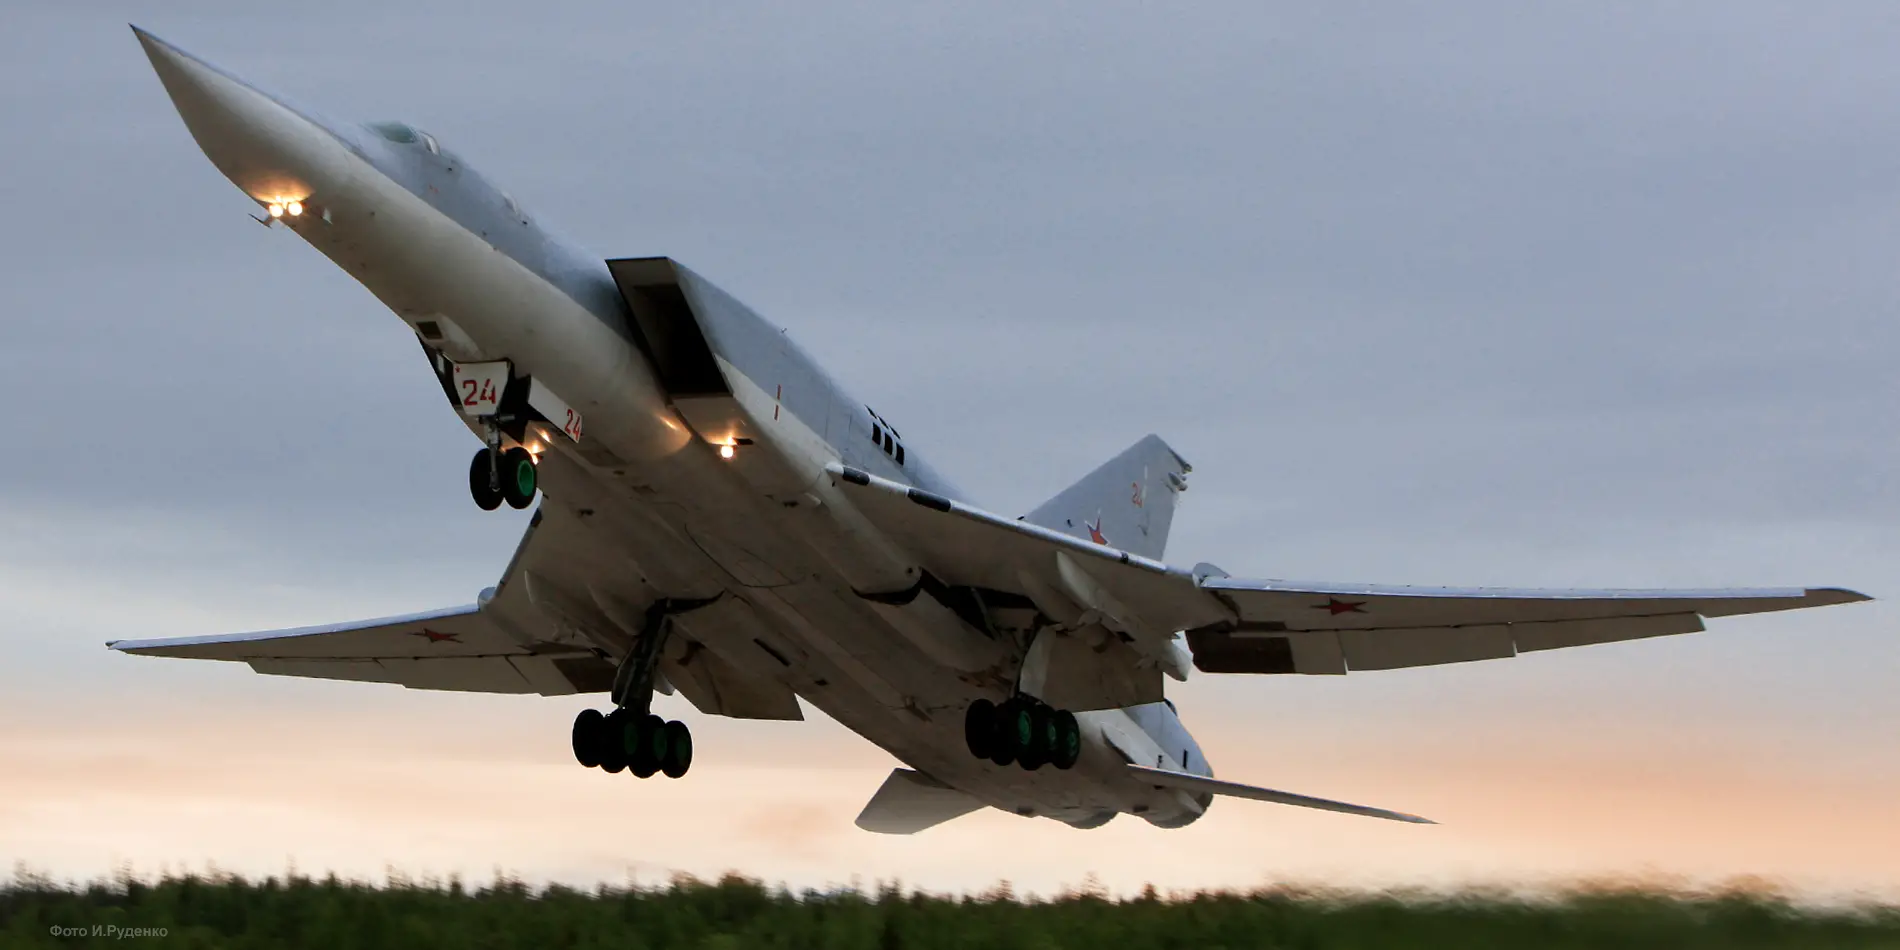 Αναφορές για νέα μαζική απογείωση 26 ρωσικών στρατηγικών βομβαρδιστικών